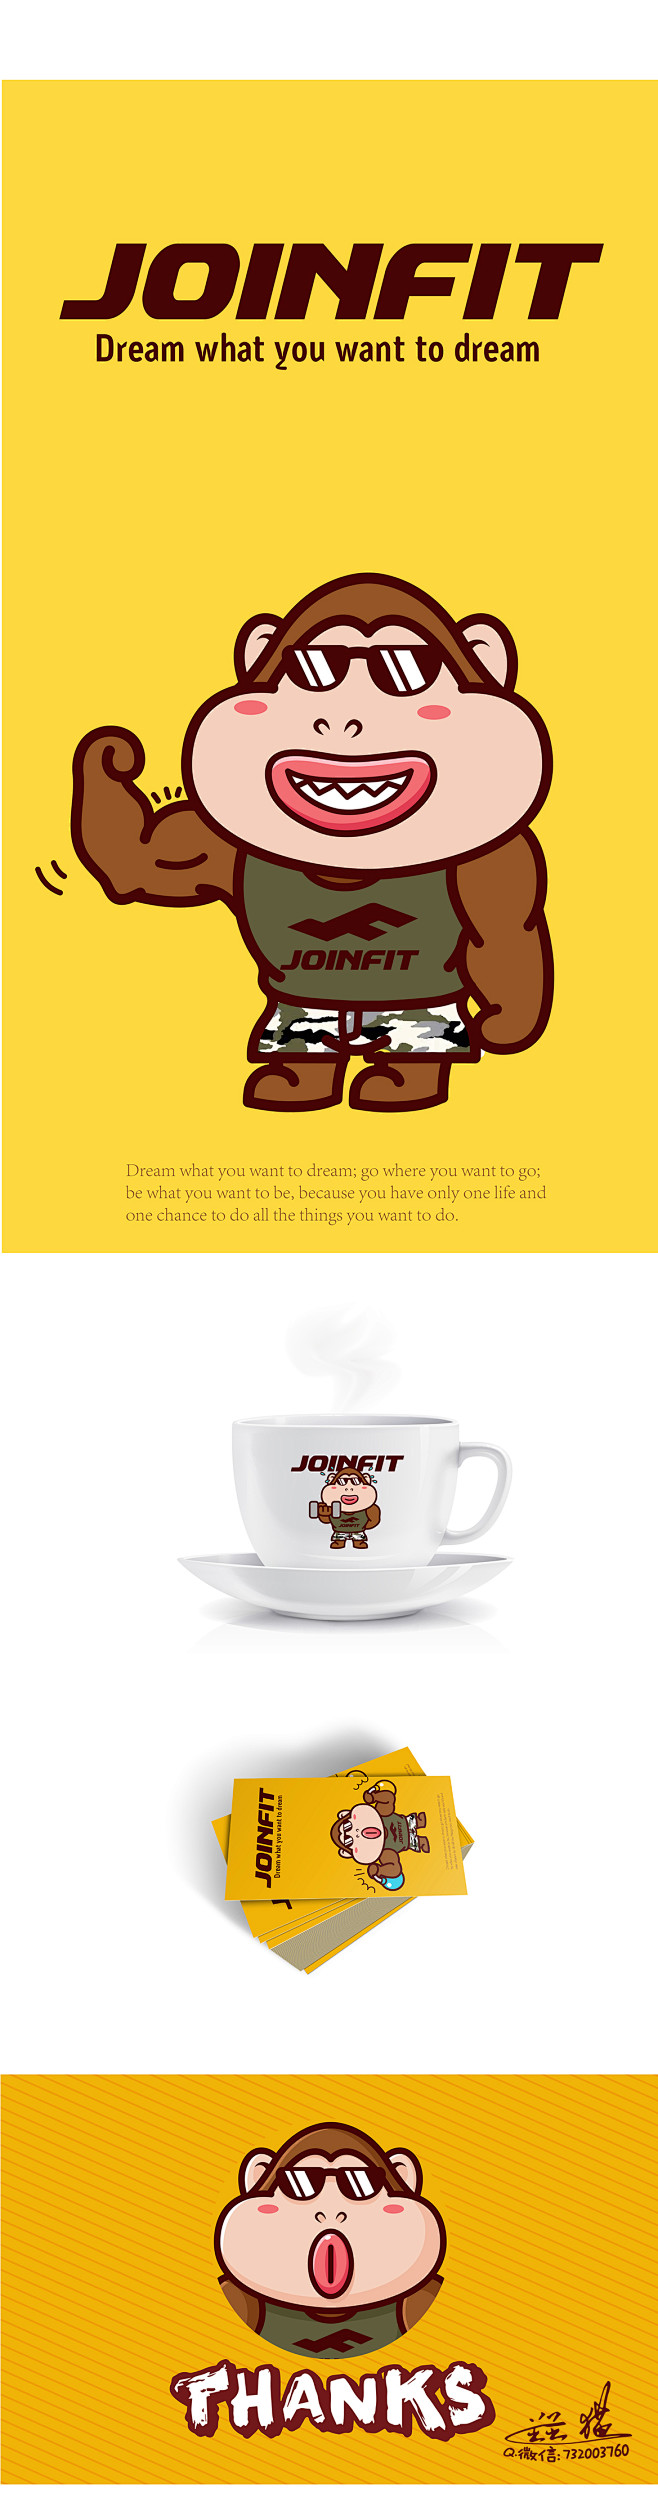 JOINFIT健身器材品牌卡通形象吉祥物...